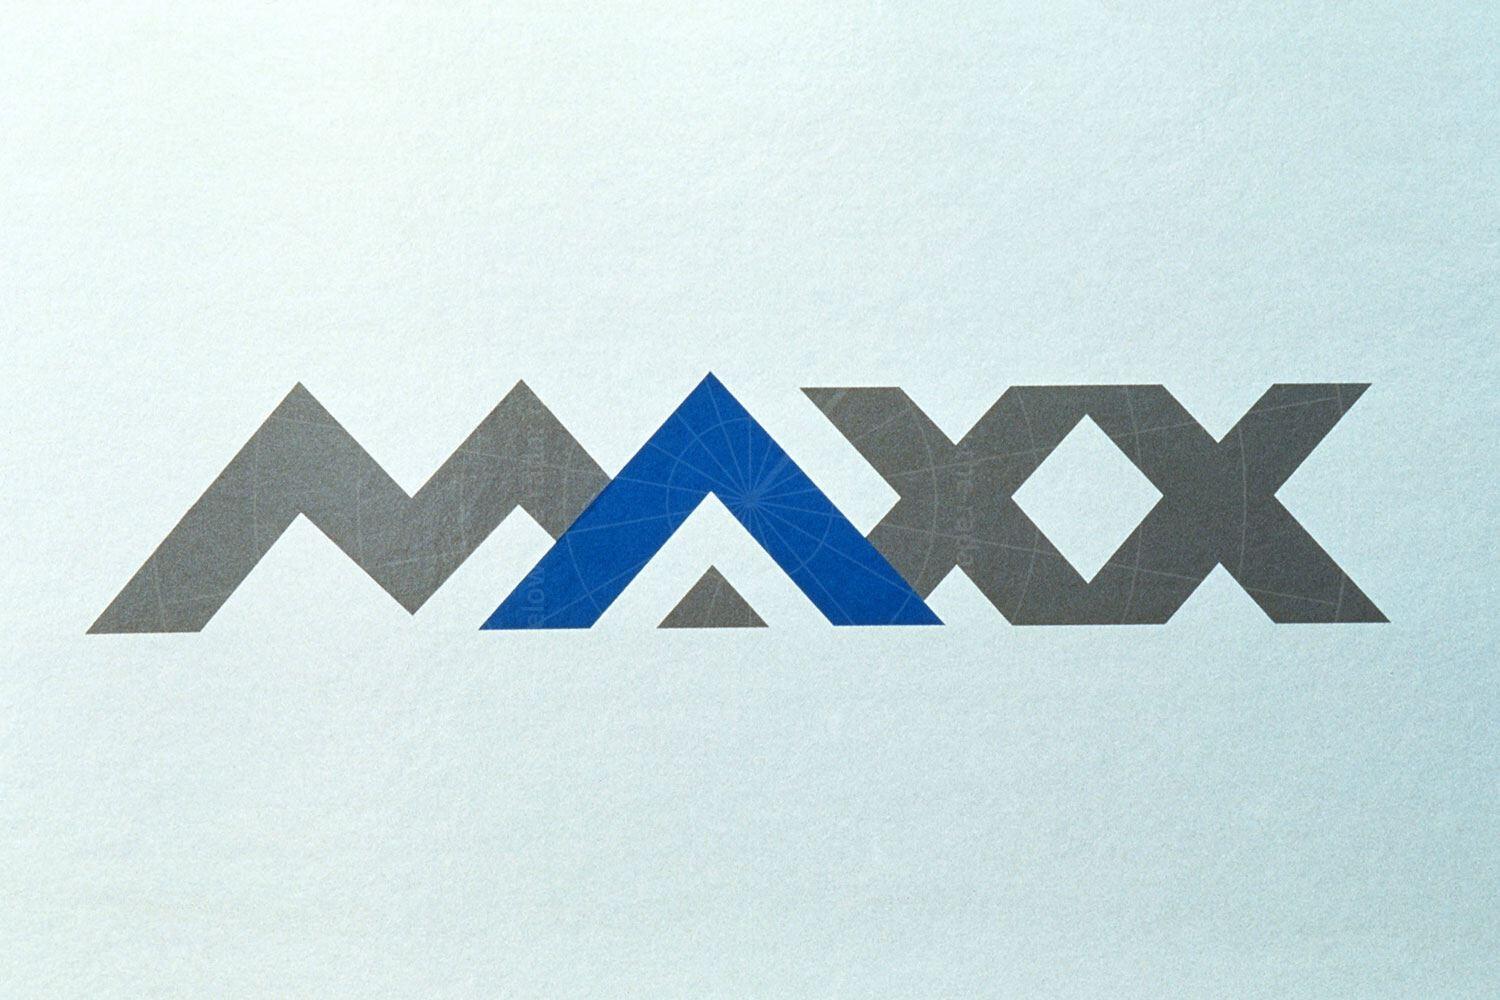 Opel Maxx logo Pic: GM | Opel Maxx logo